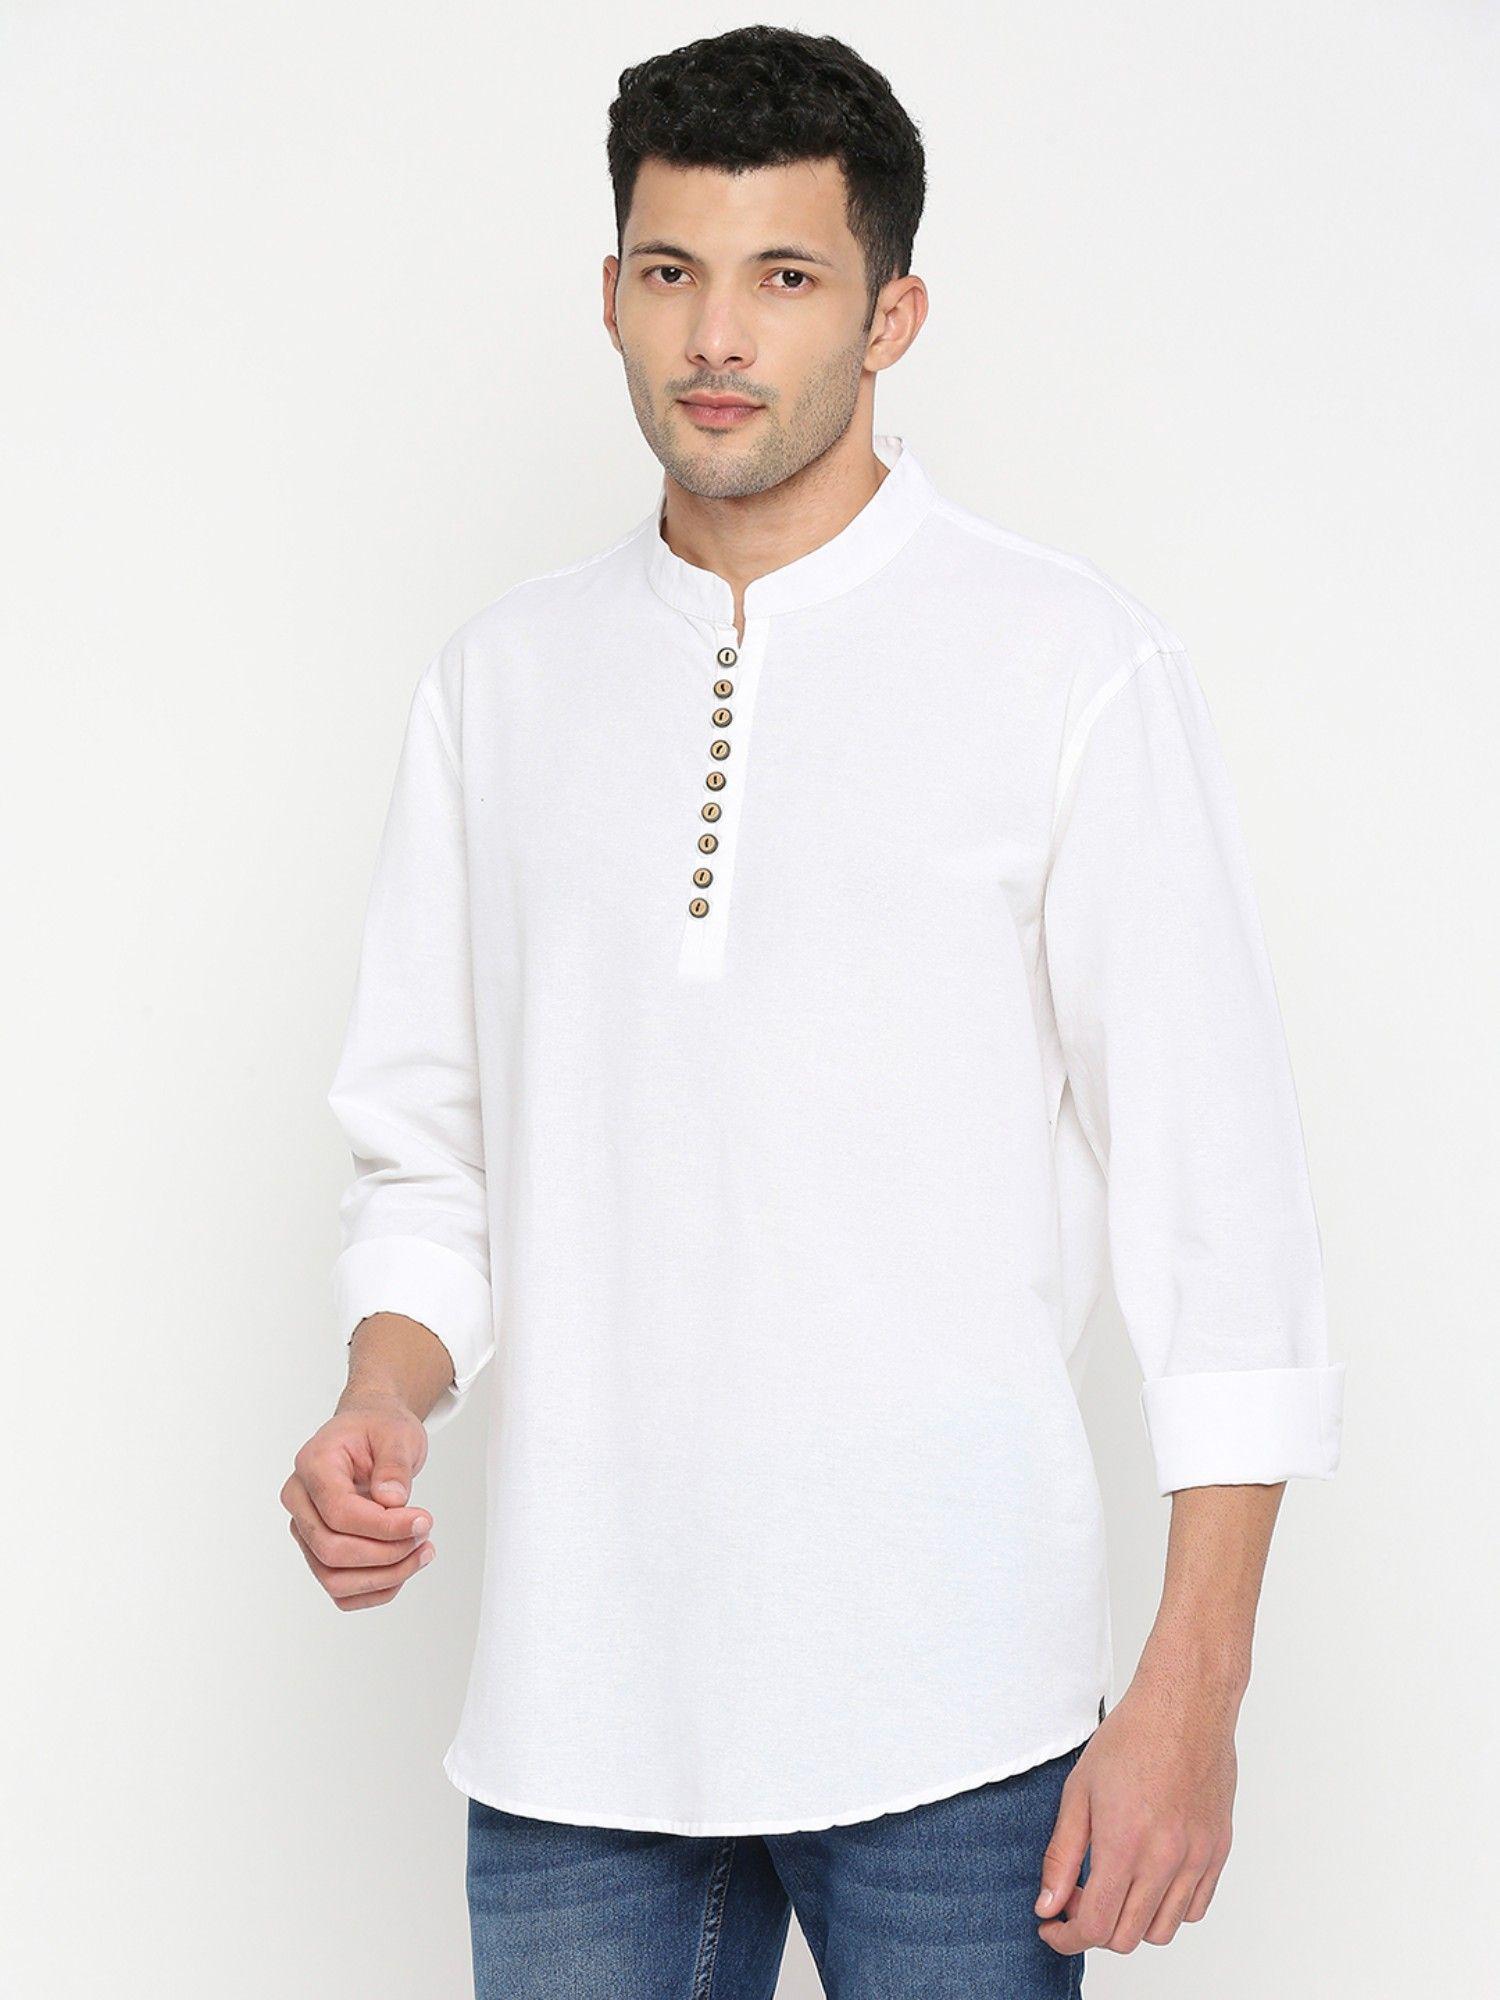 white cotton full sleeve plain shirt